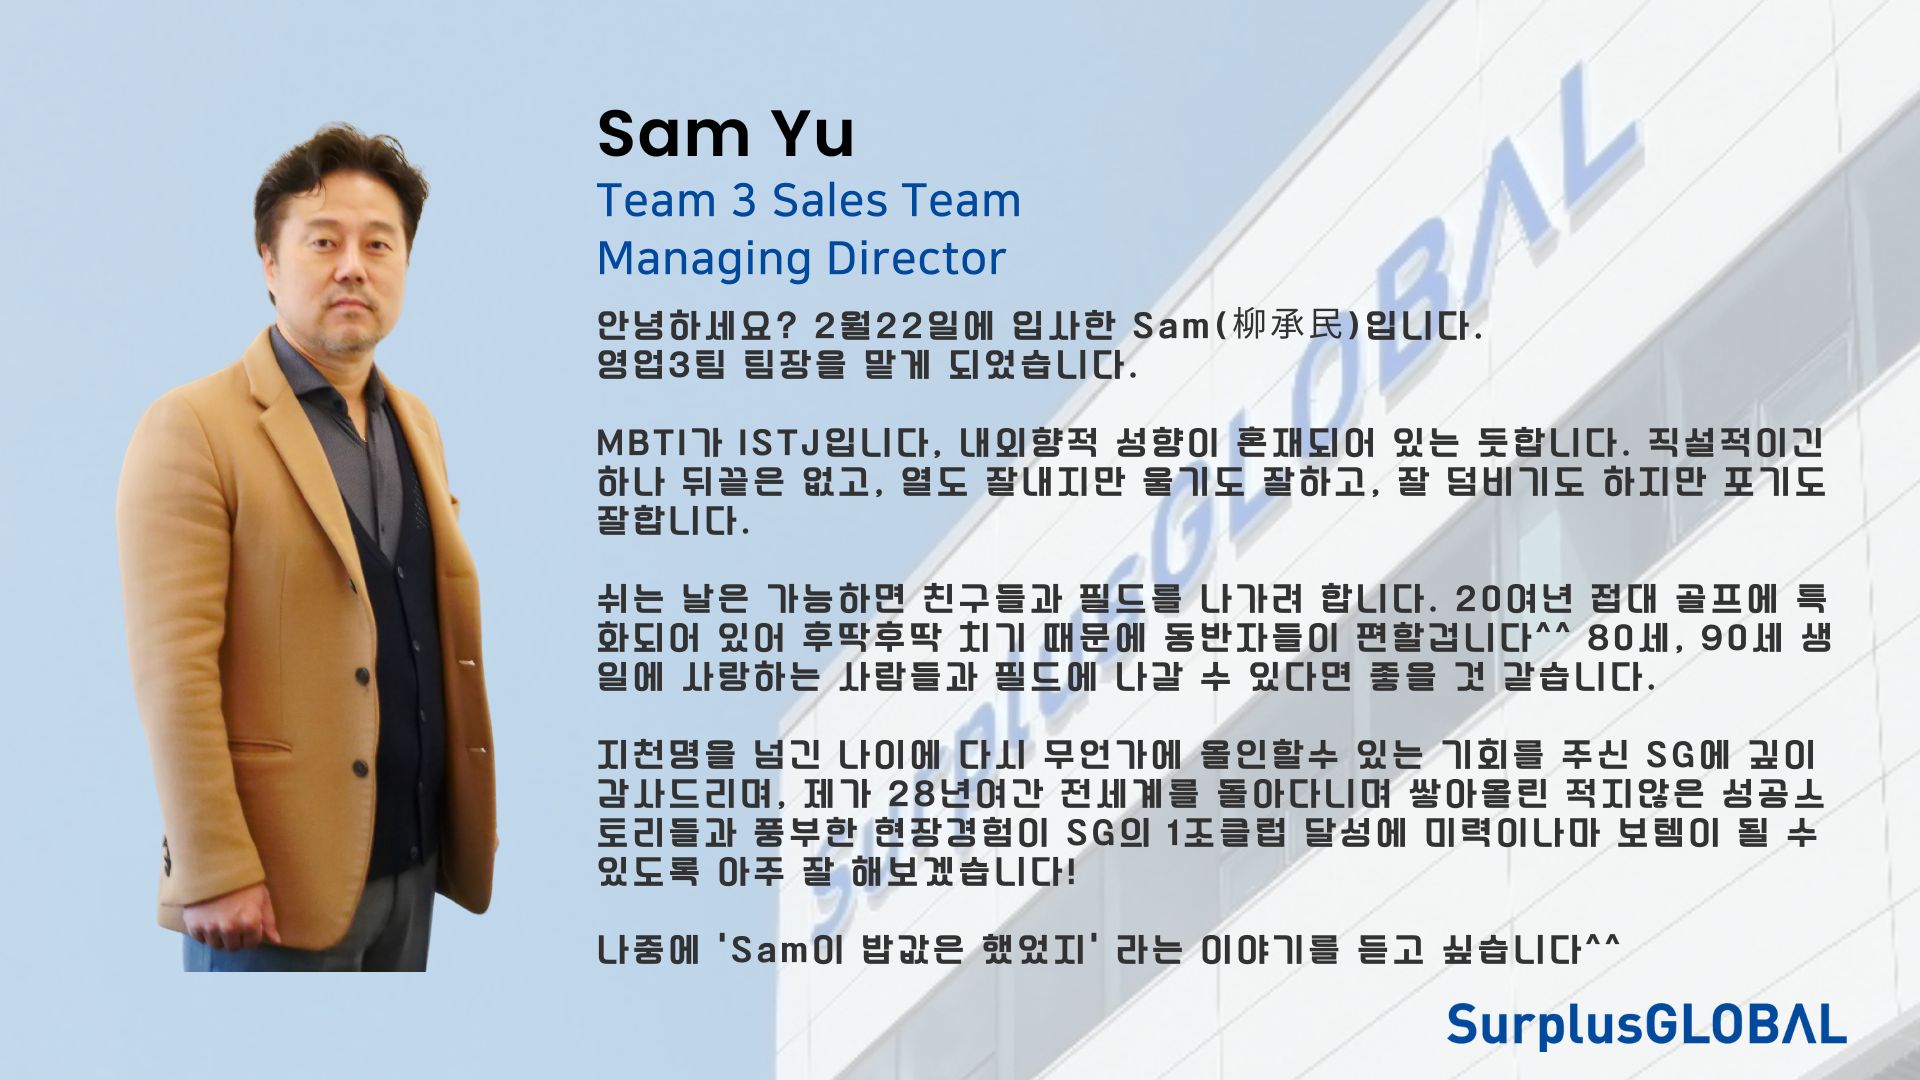 서플러스글로벌 팀멤버를 만나다. Managing Director, Sam Yu (Sales Team 3)